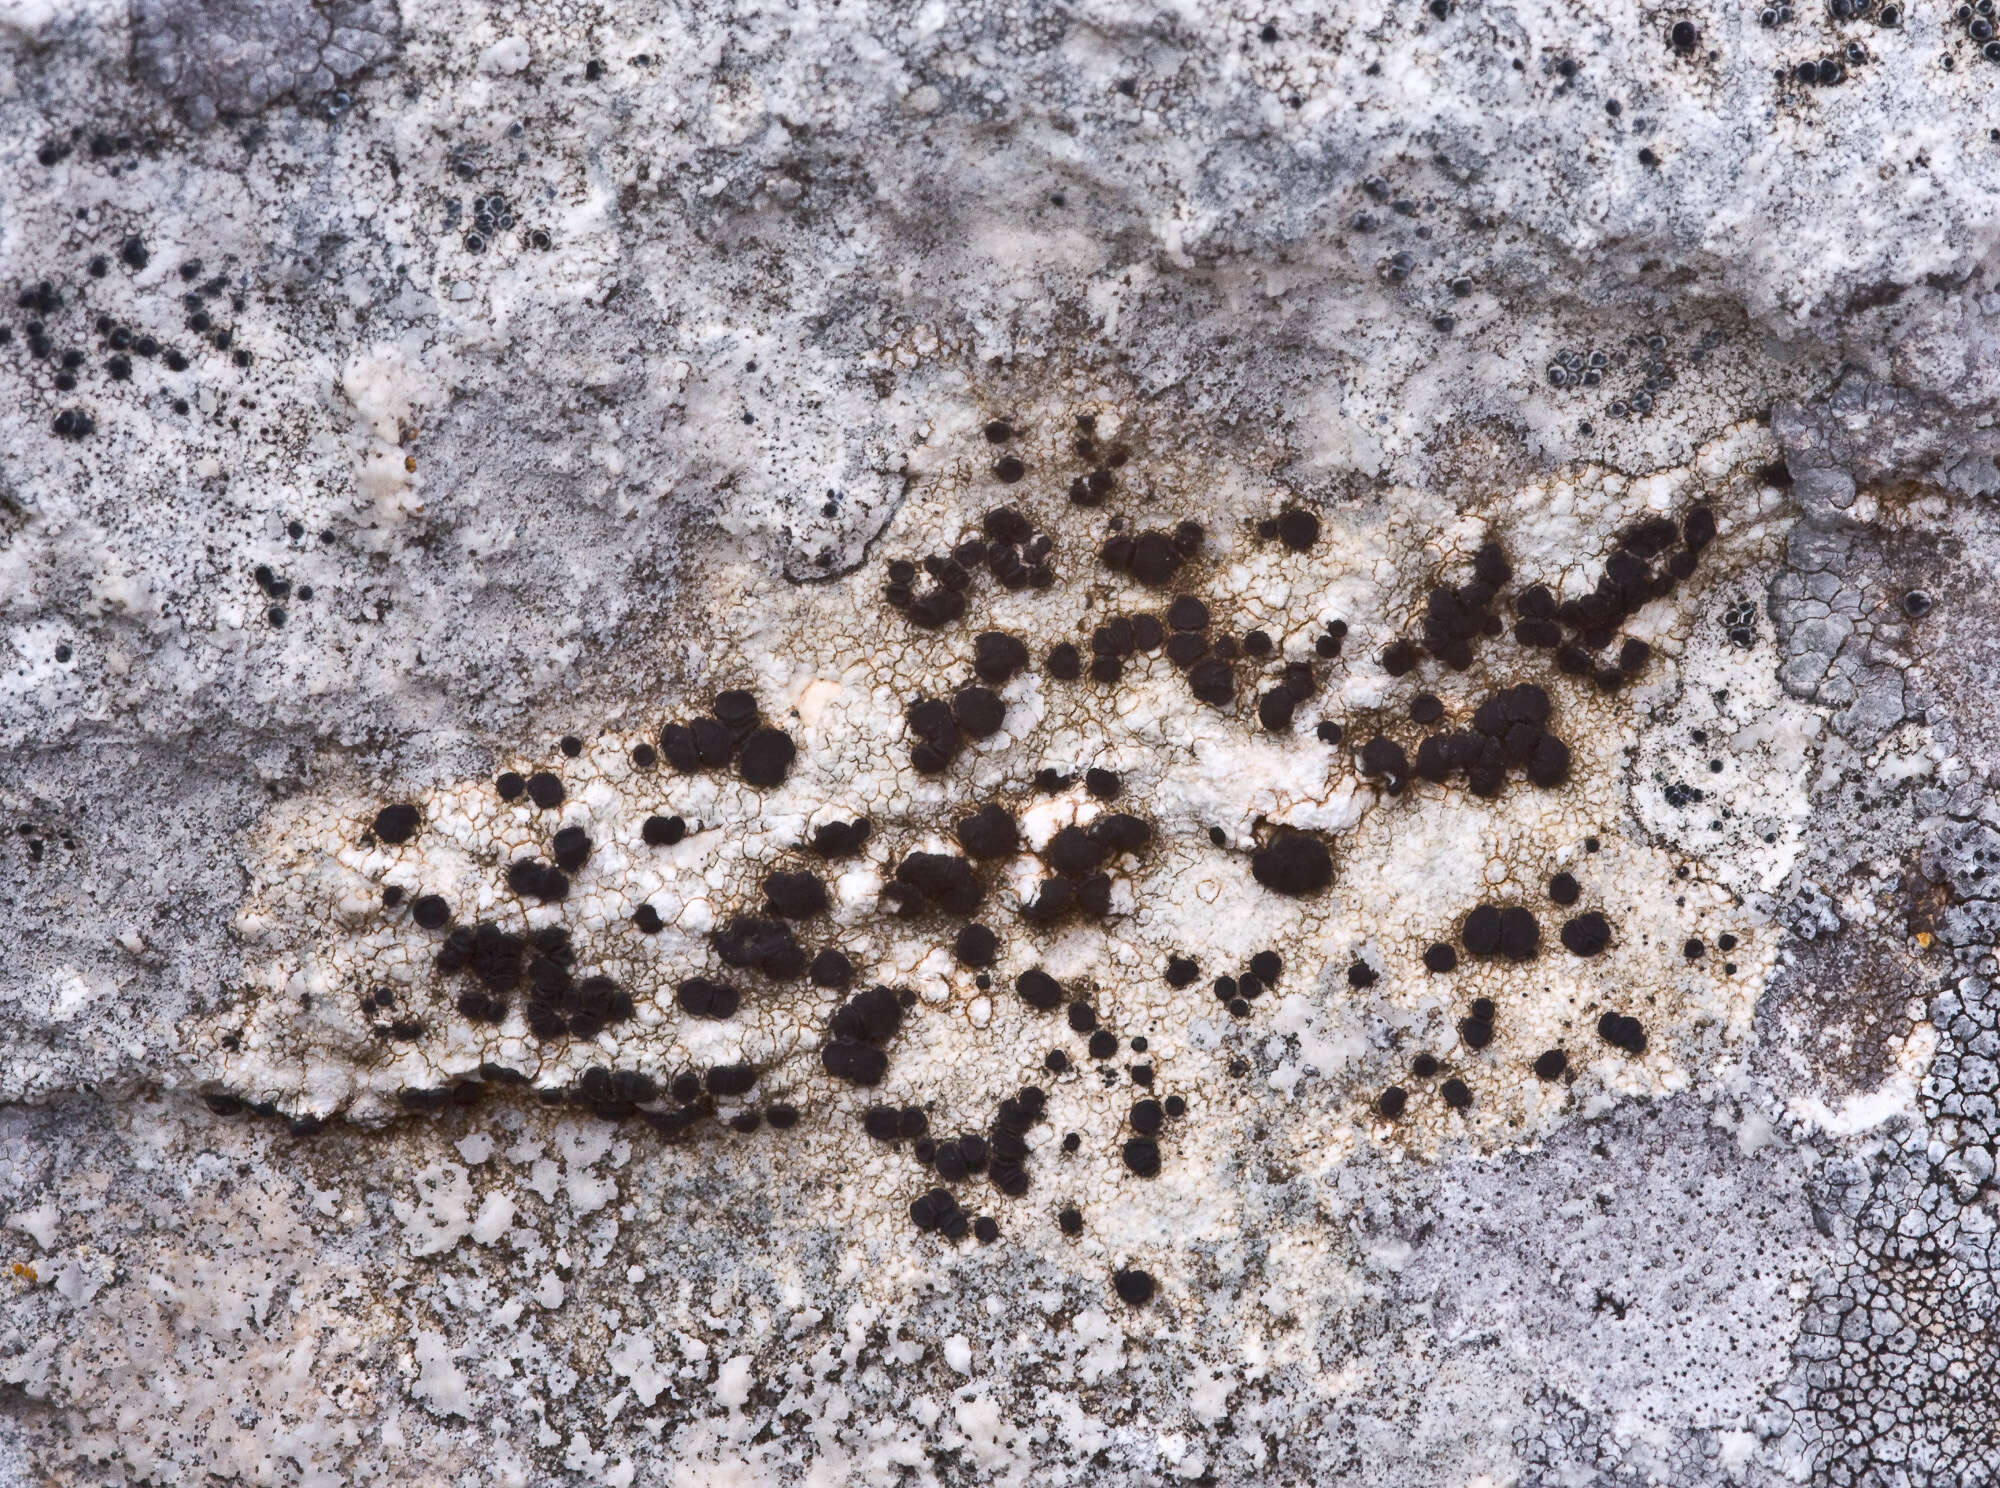 Image of farnoldia lichen